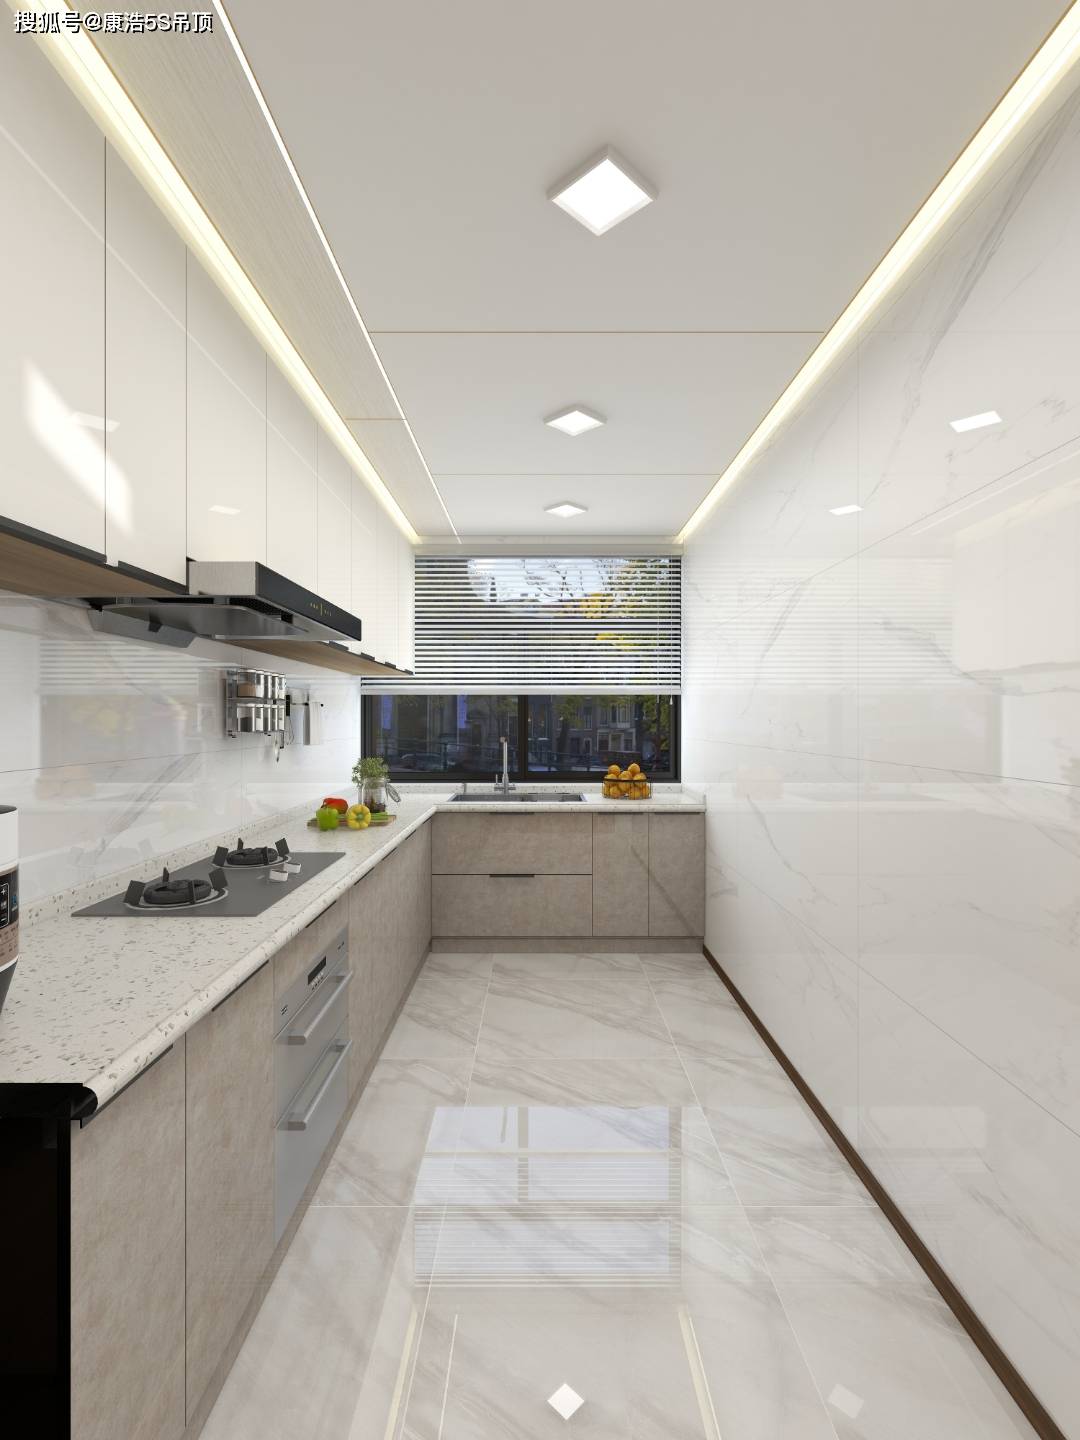 如何选择厨房和浴室的天花板?2022年不容错过的铝蜂窝天花板设计